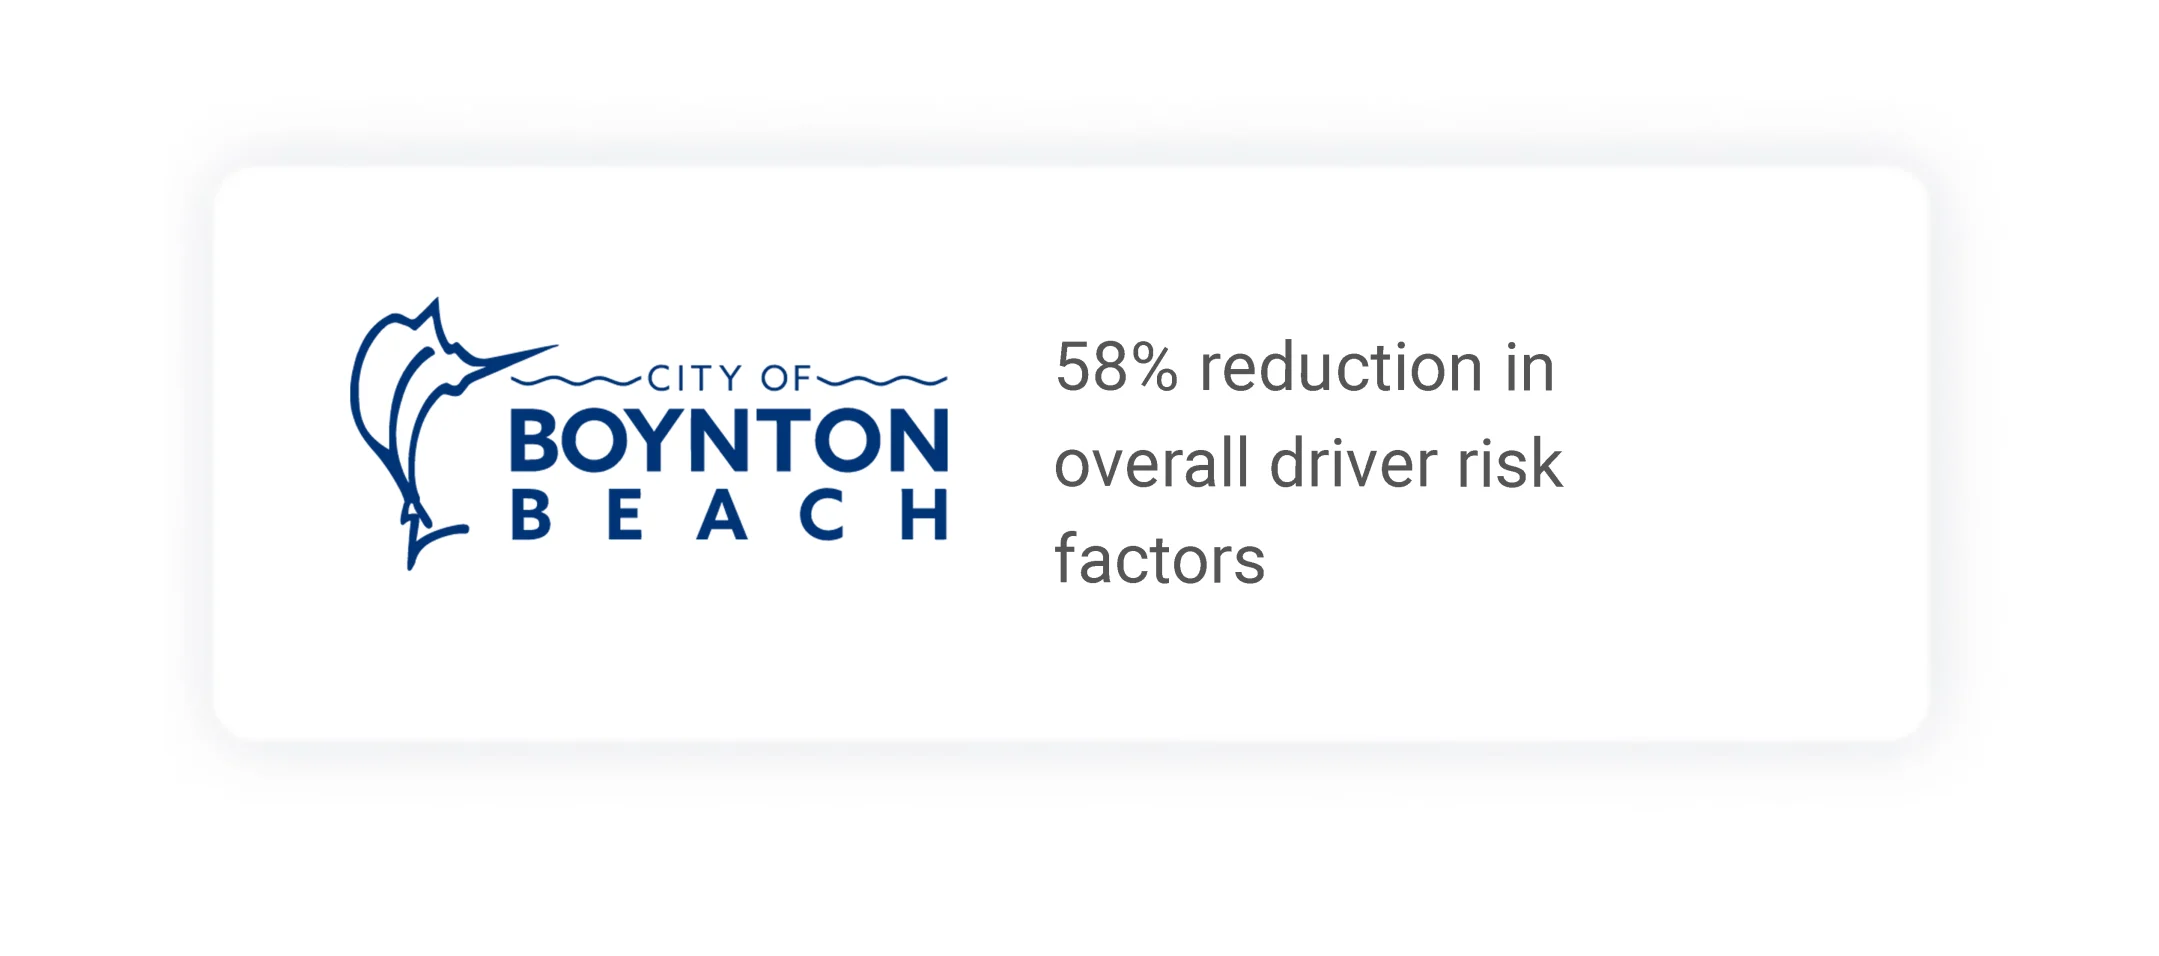 City of Boynton Beach featured ROI stat